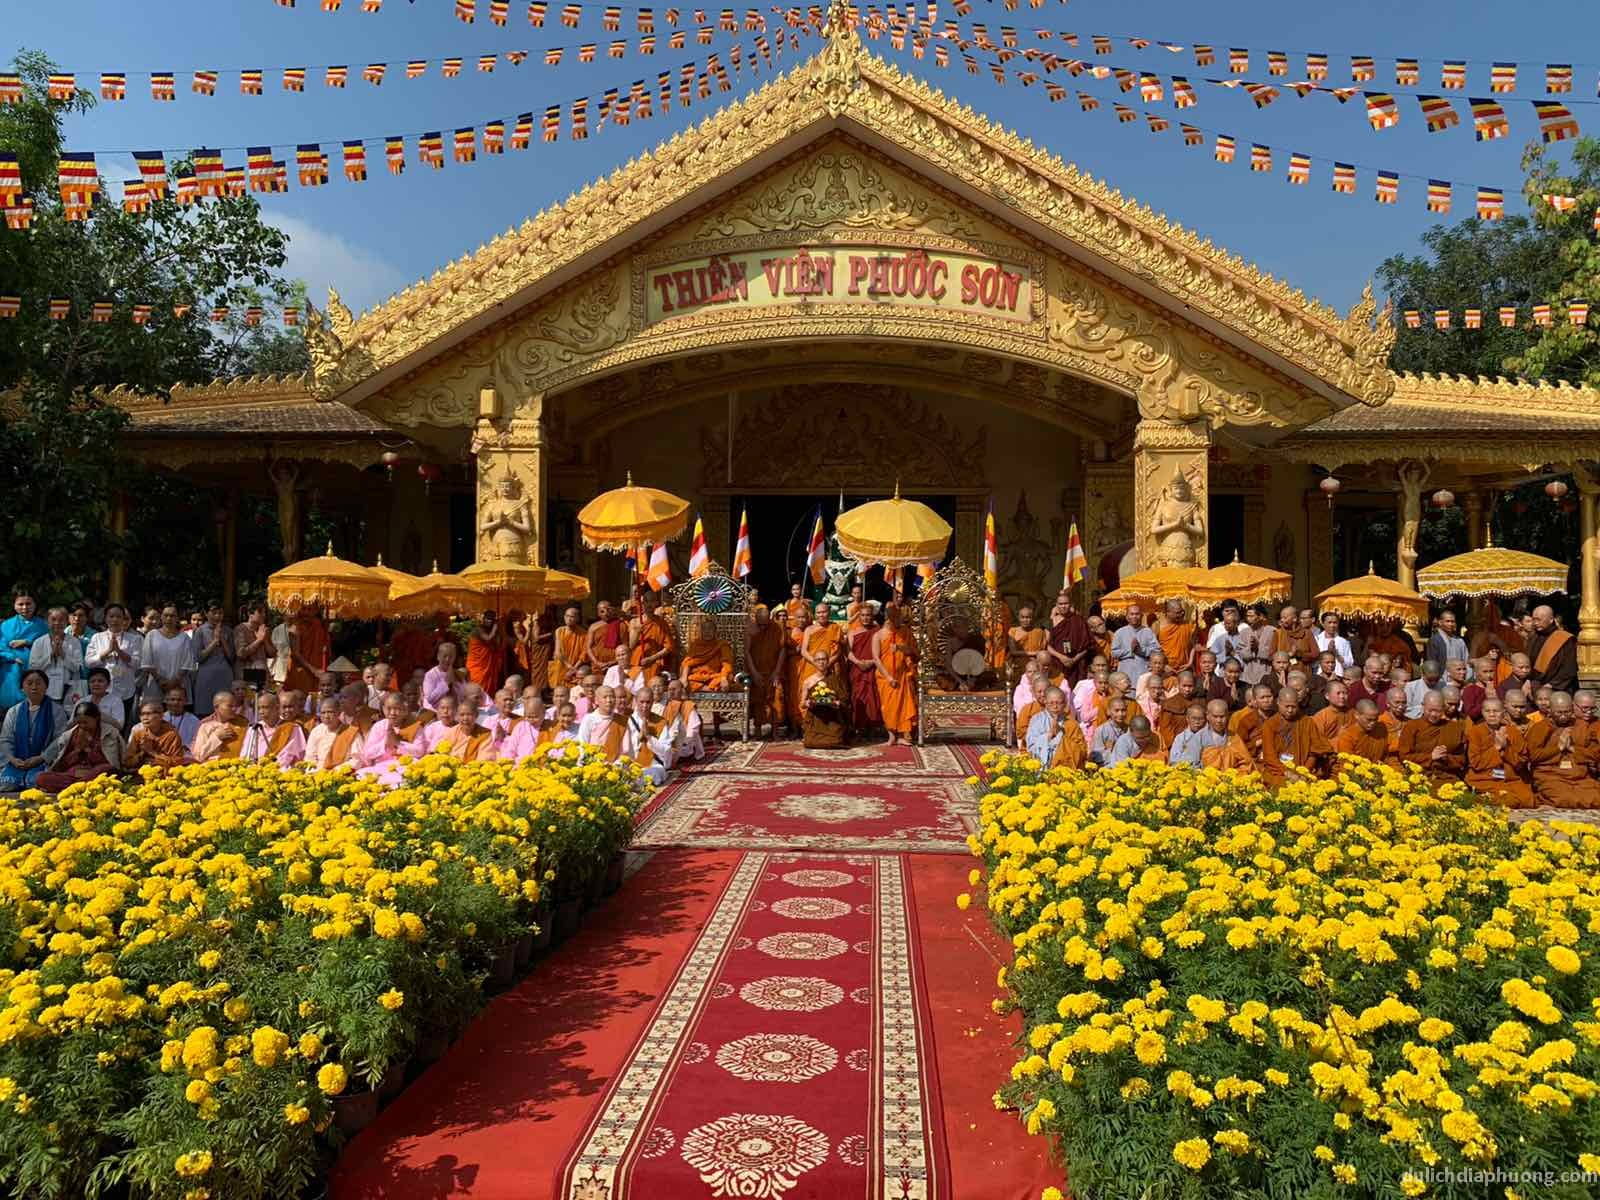 du lịch Thiền viện Phước Sơn